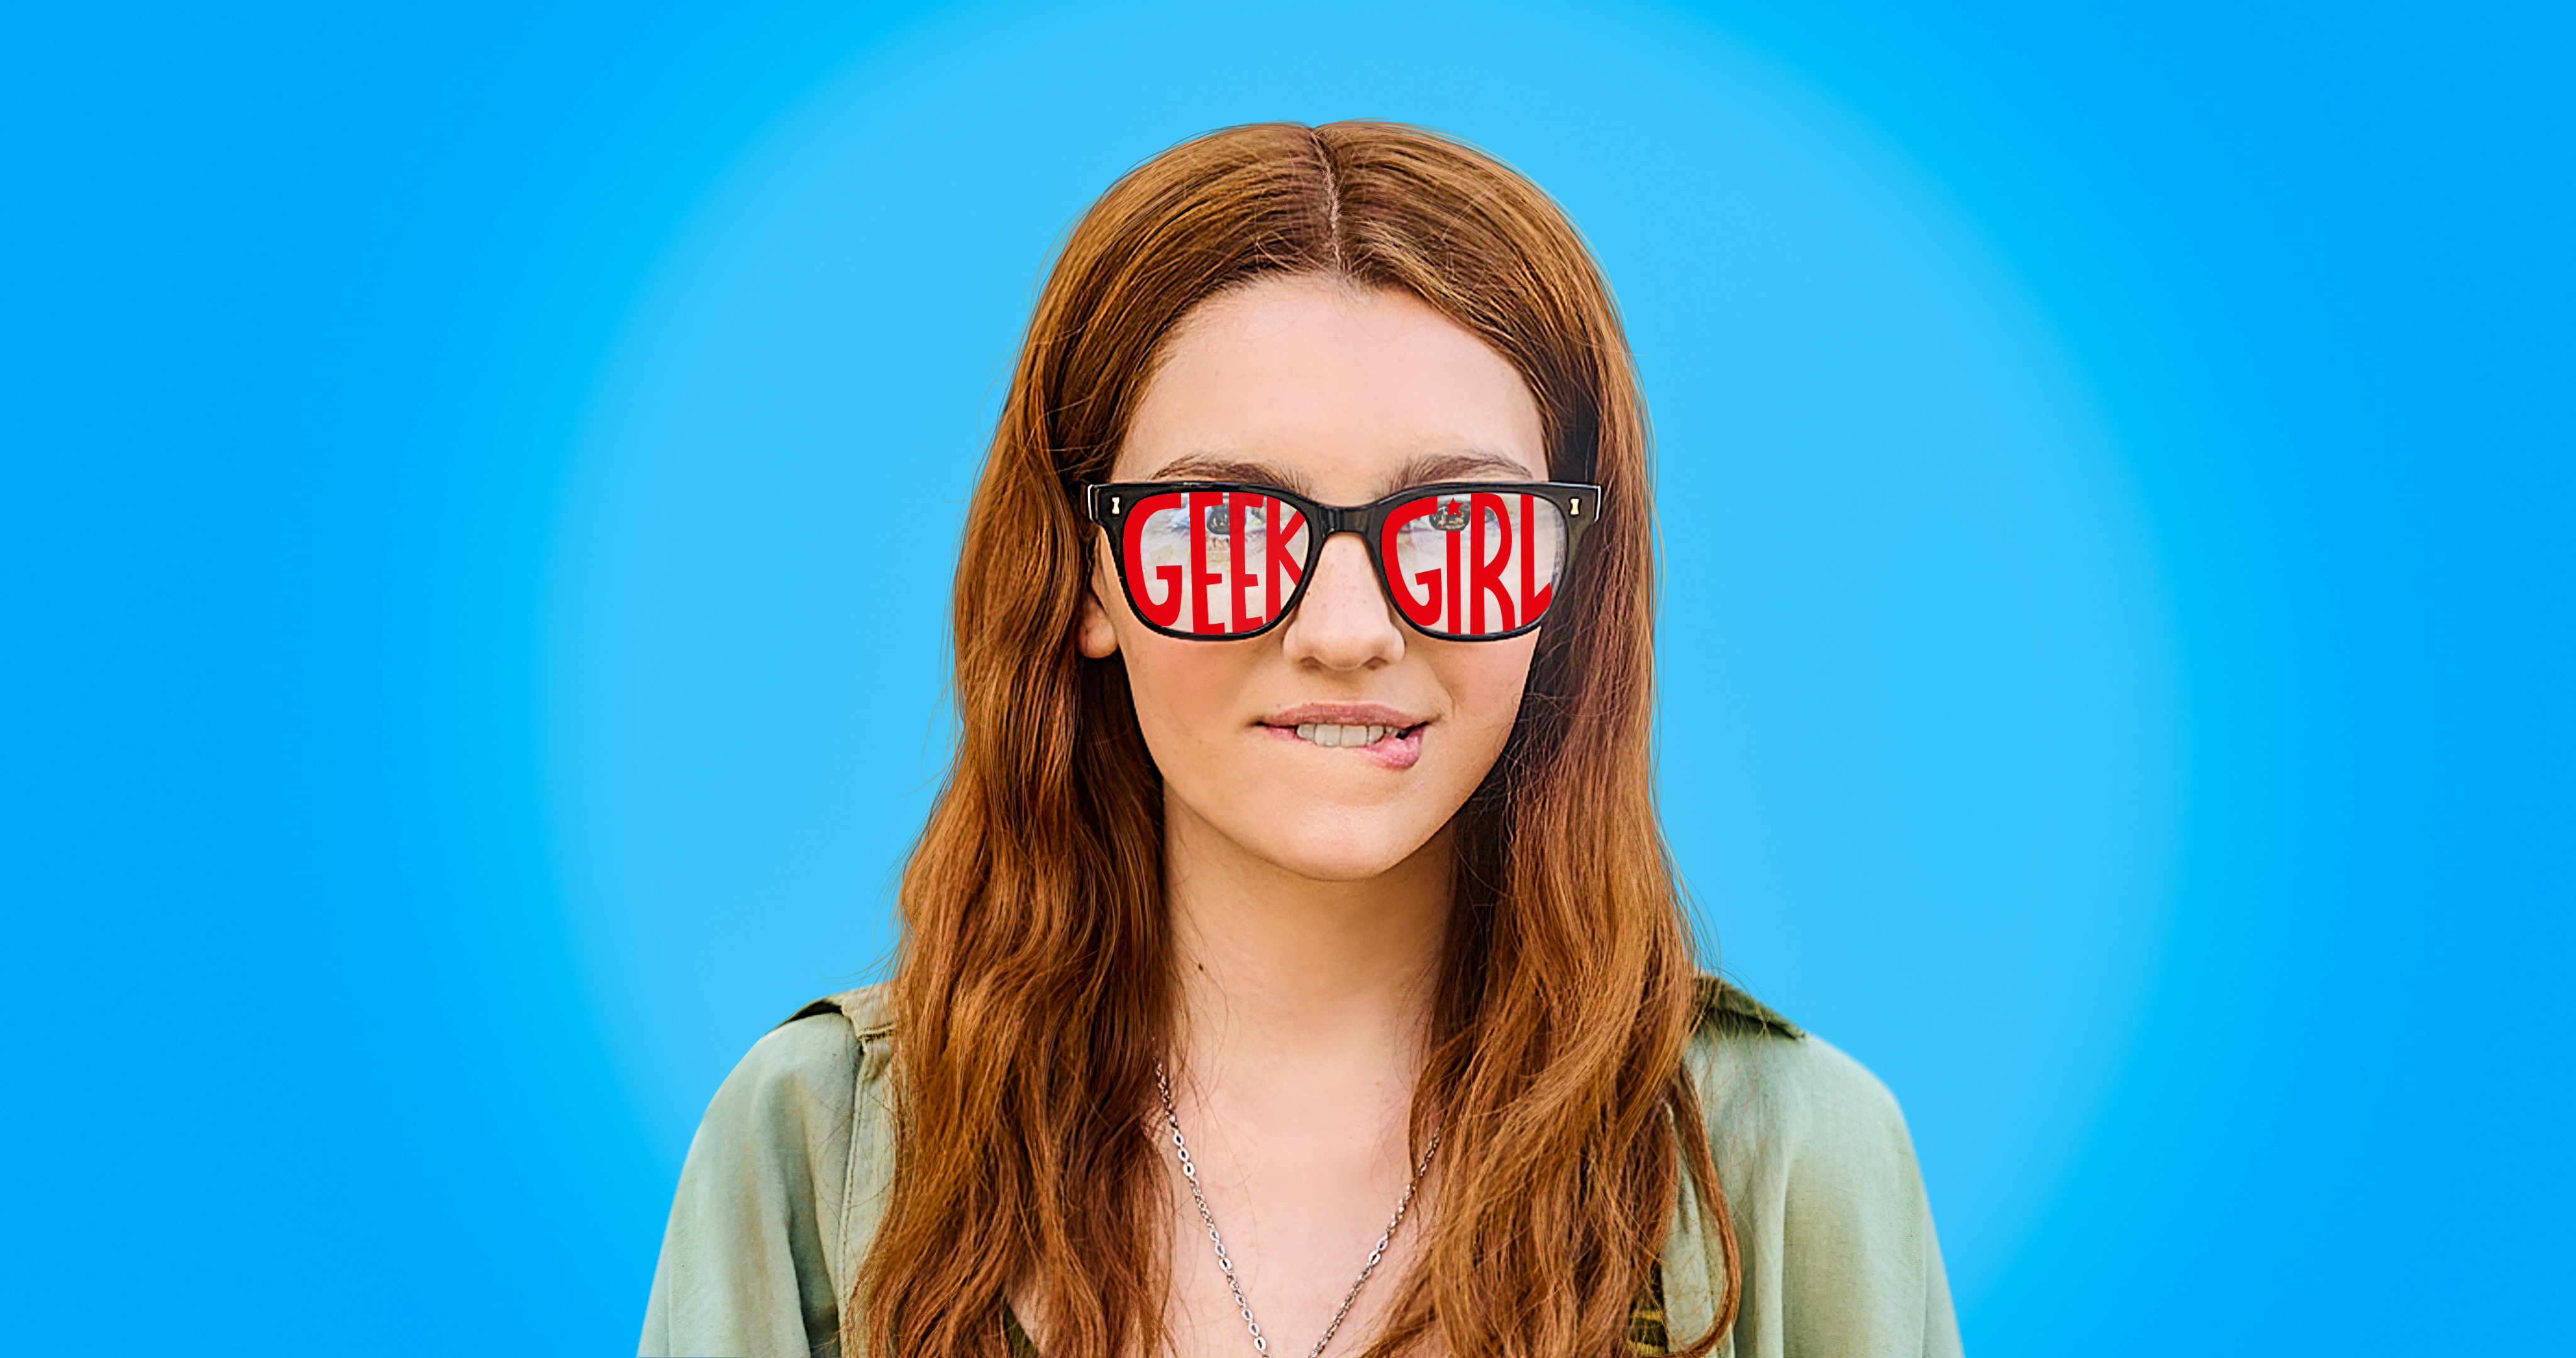 La serie de Netflix 'Geek Girl' se basa en un libro: Fecha, reparto, más